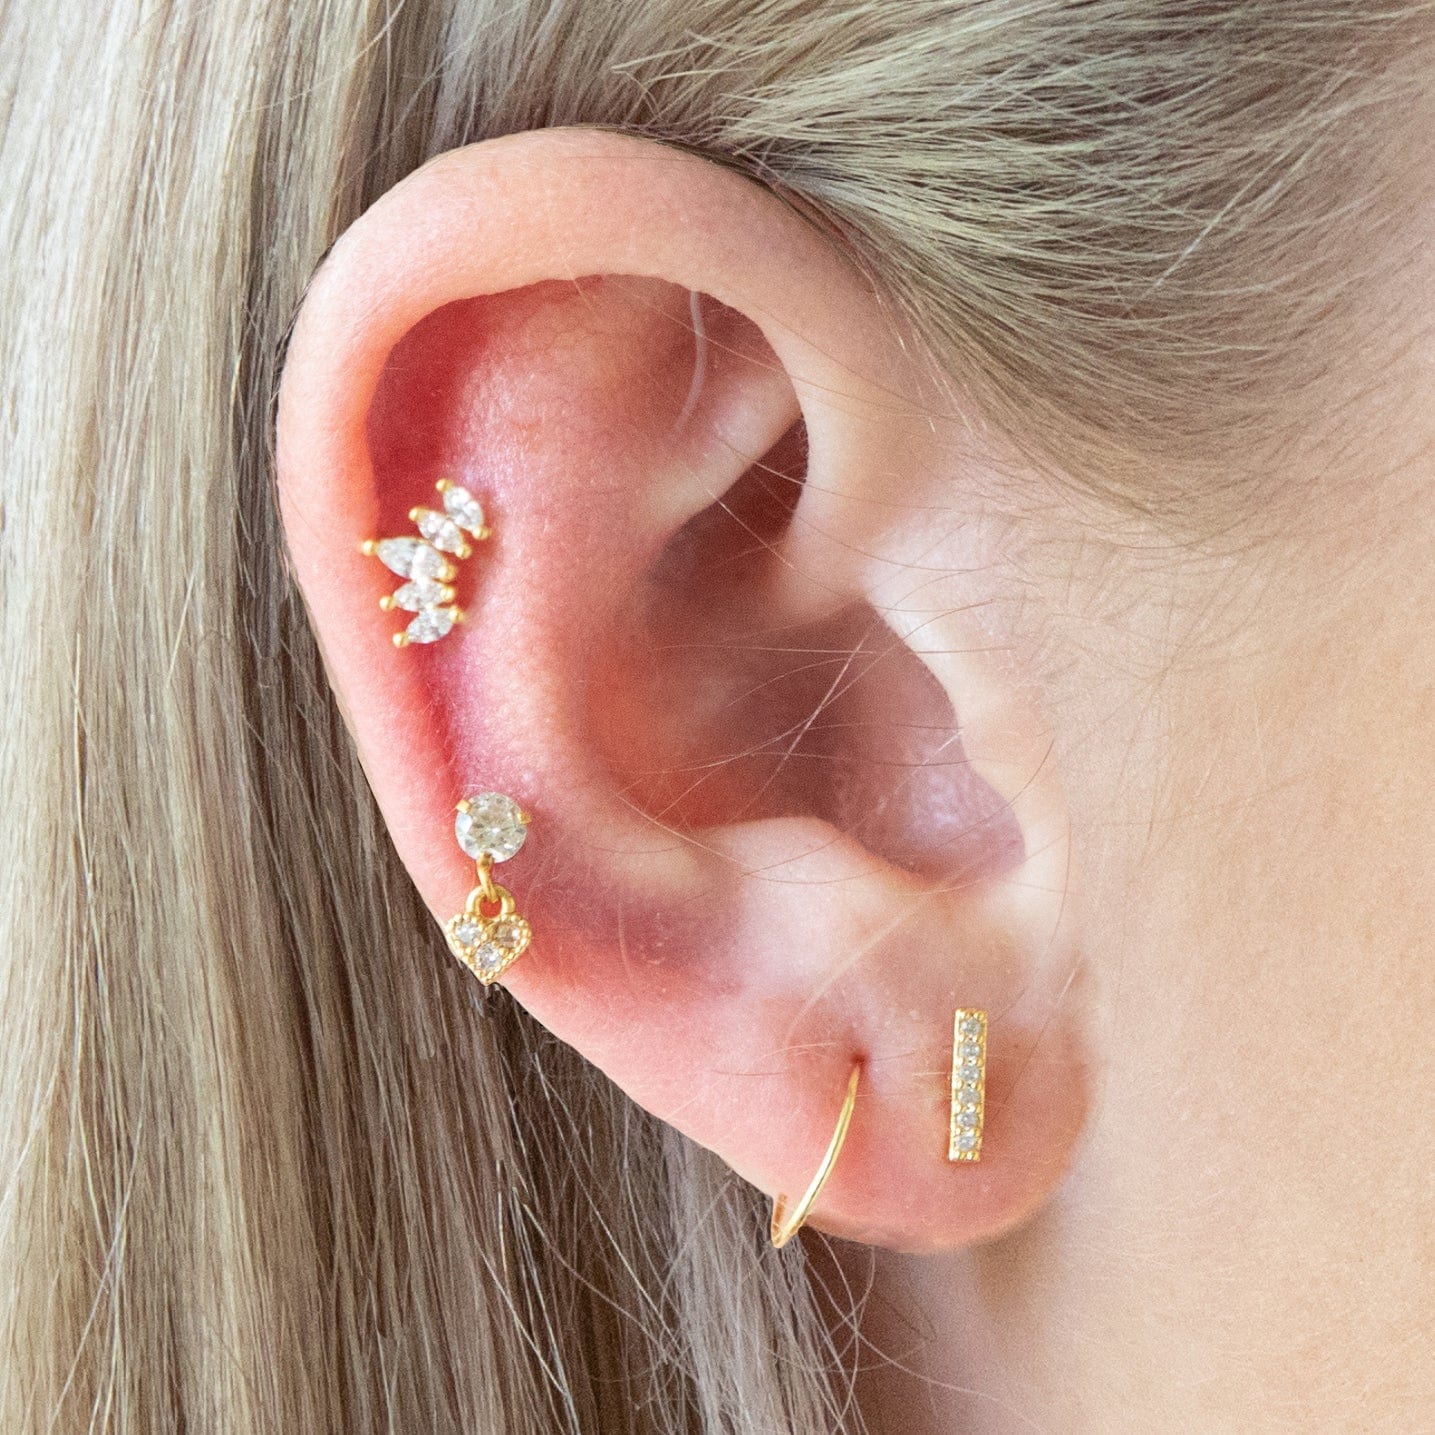 Twilight London Helix Earring Small Helix Crown Piercing